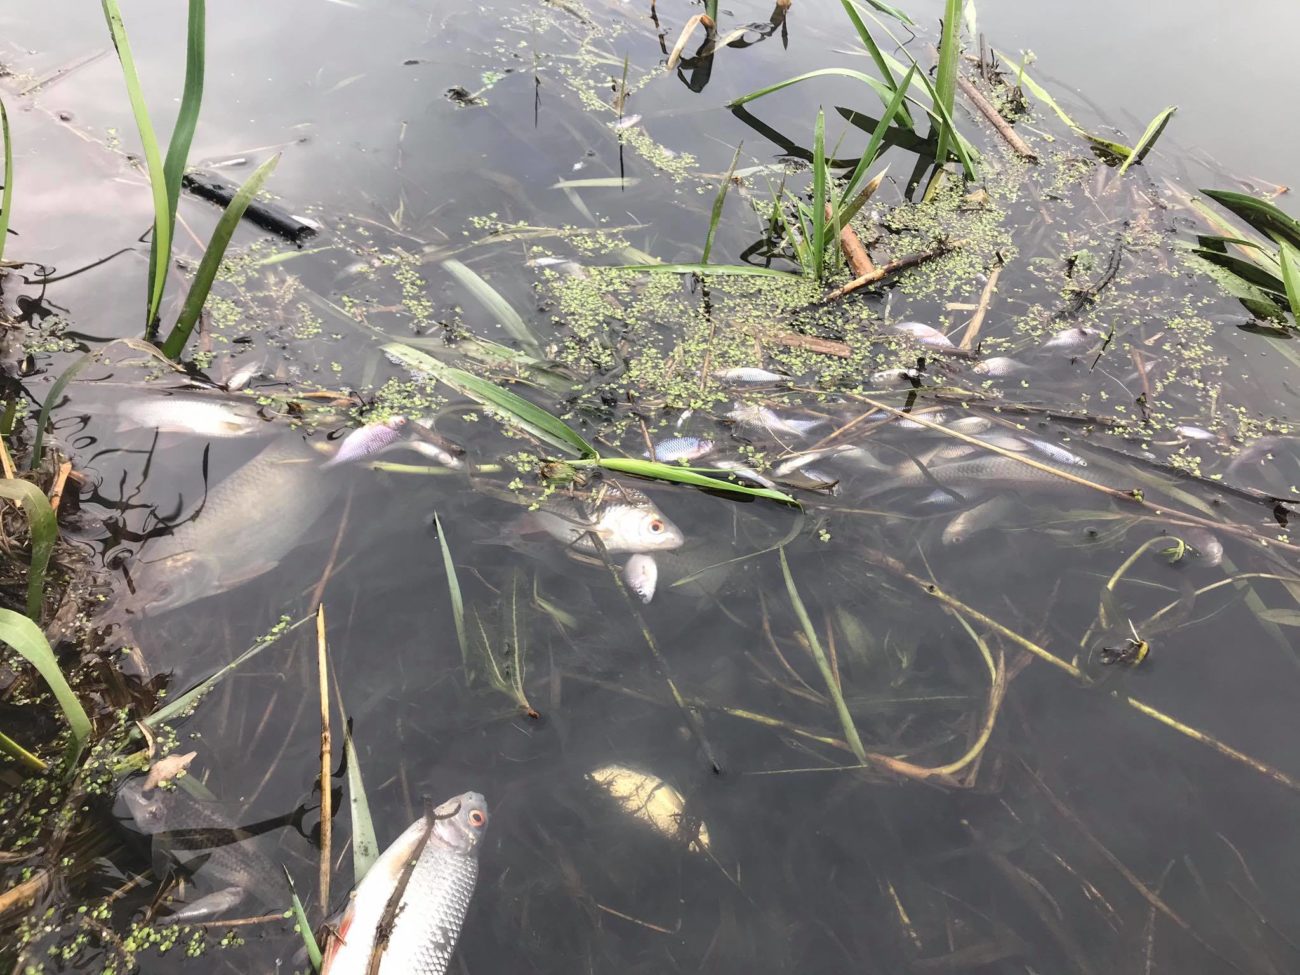 Martwe ryby w zanieczyszczonej rzece